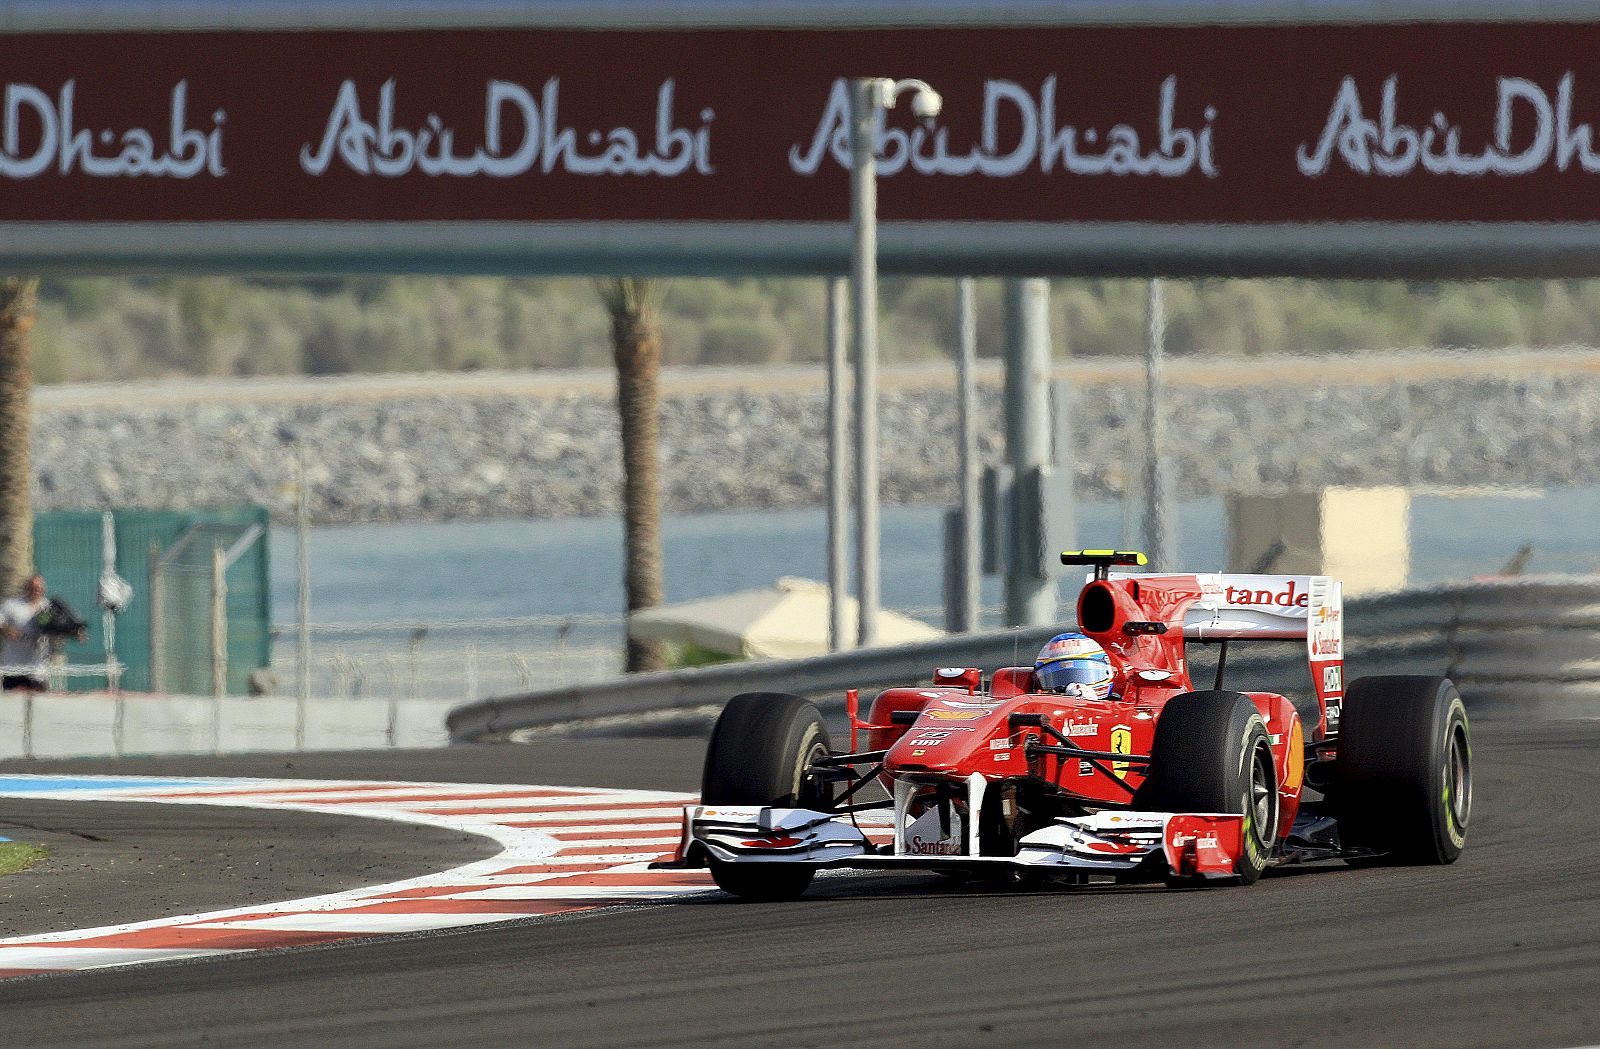 Fernando Alonso conduce su Ferrari en el circuito de Yas Marina, donde se juega el título mundial de Fórmula 1.